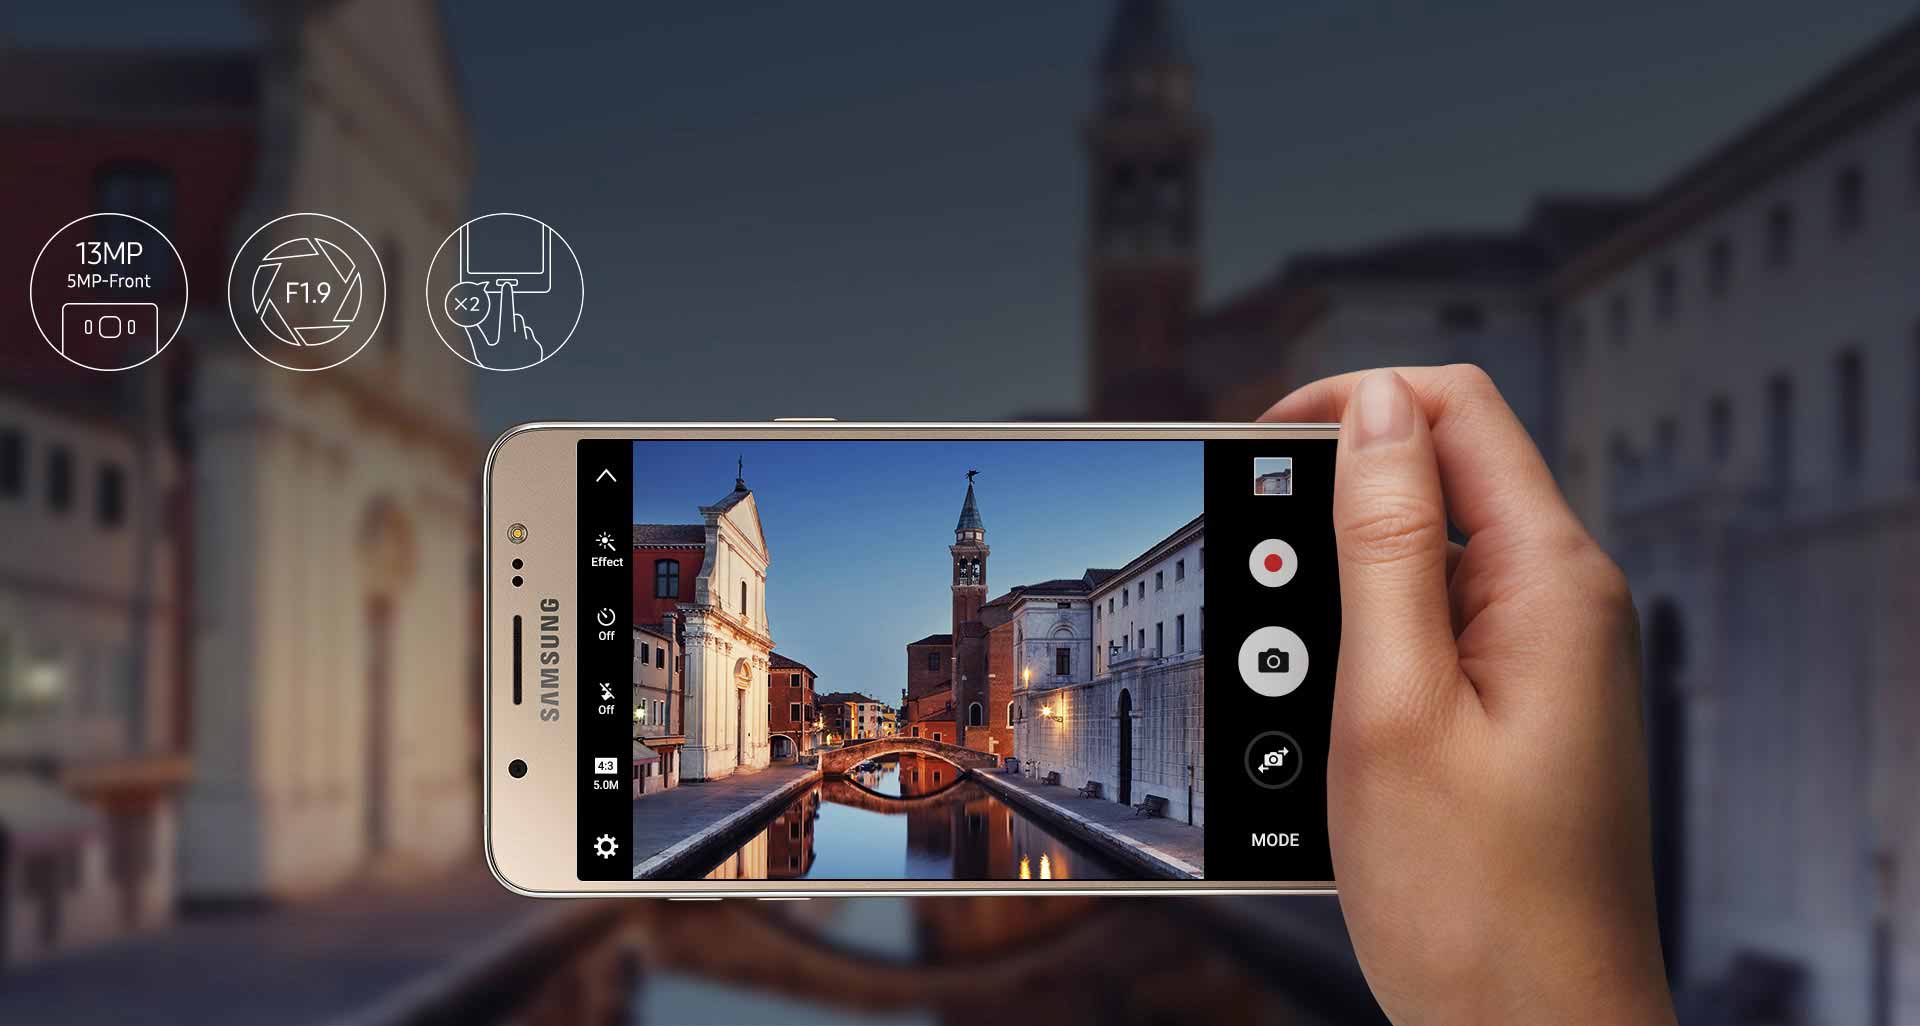 ثبت لحظات زندگی با بهترین کیفیت دوربین گوشی Galaxy J5 2016